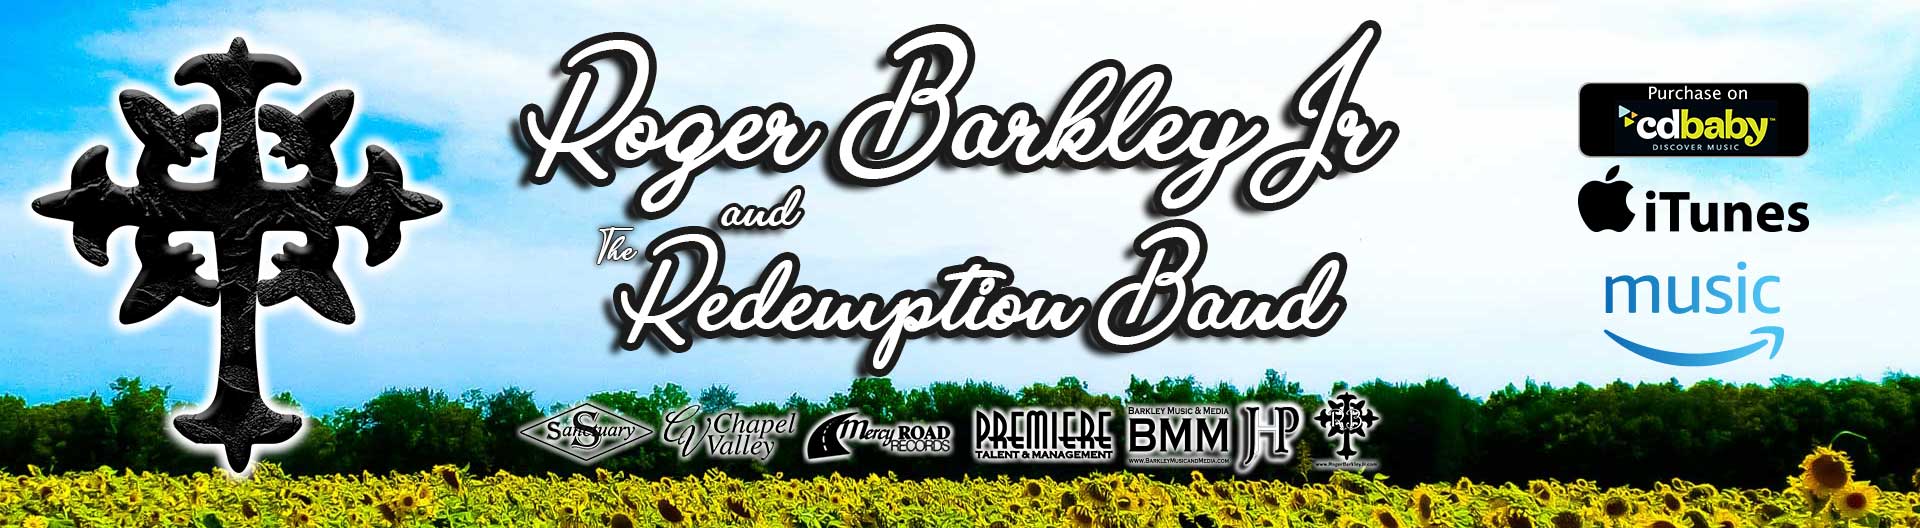 Roger Barkley Jr & The Redemption Band